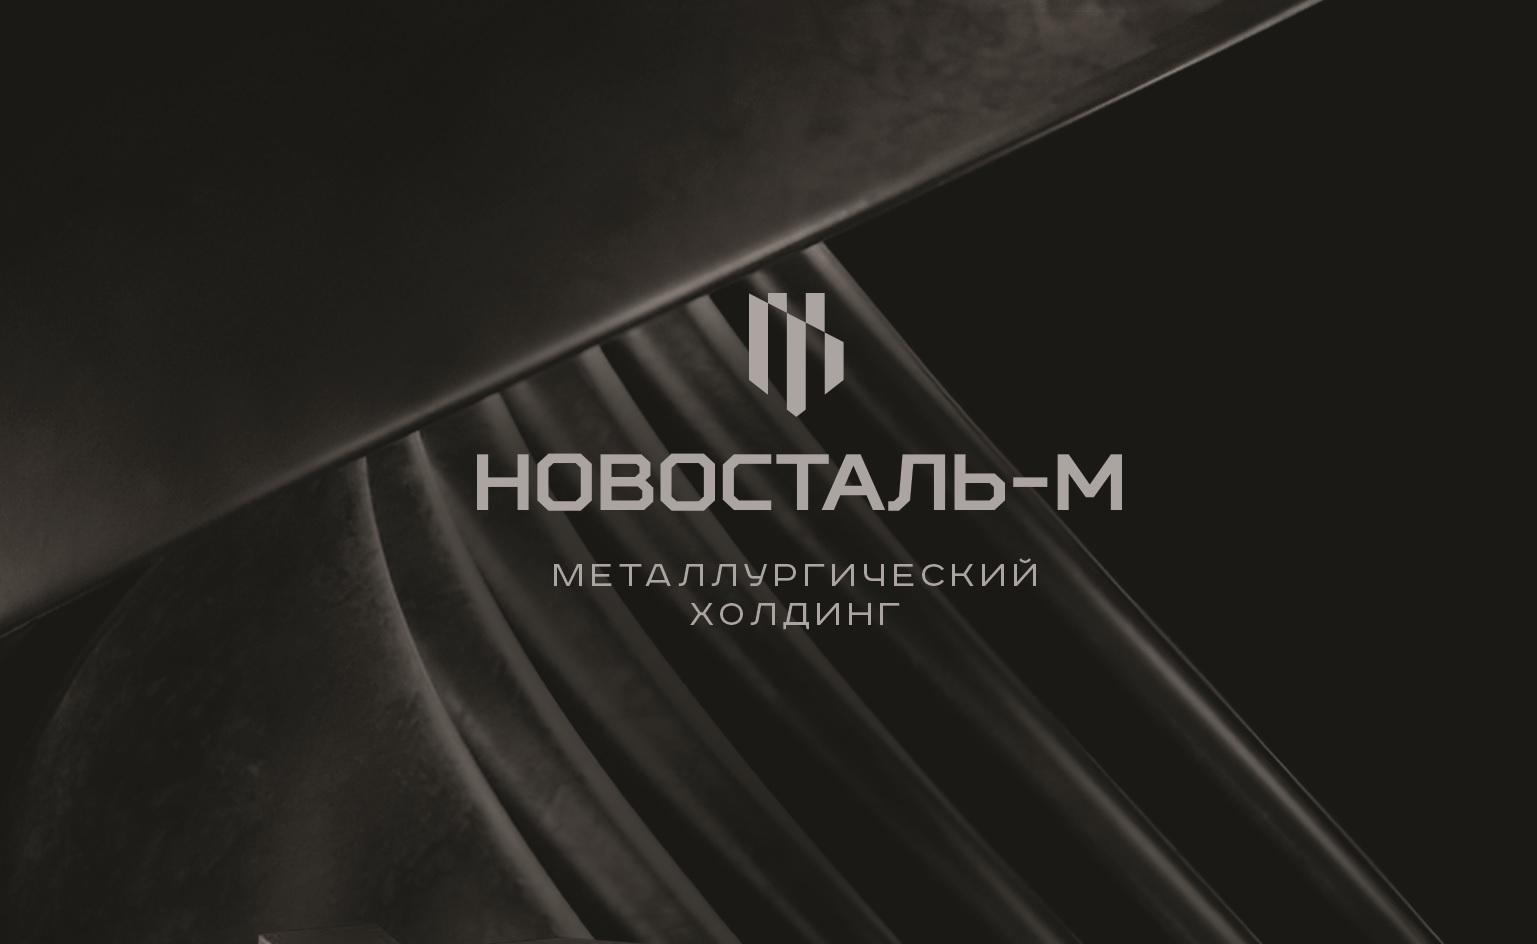 Новосталь-М открыл филиал в Узбекистане